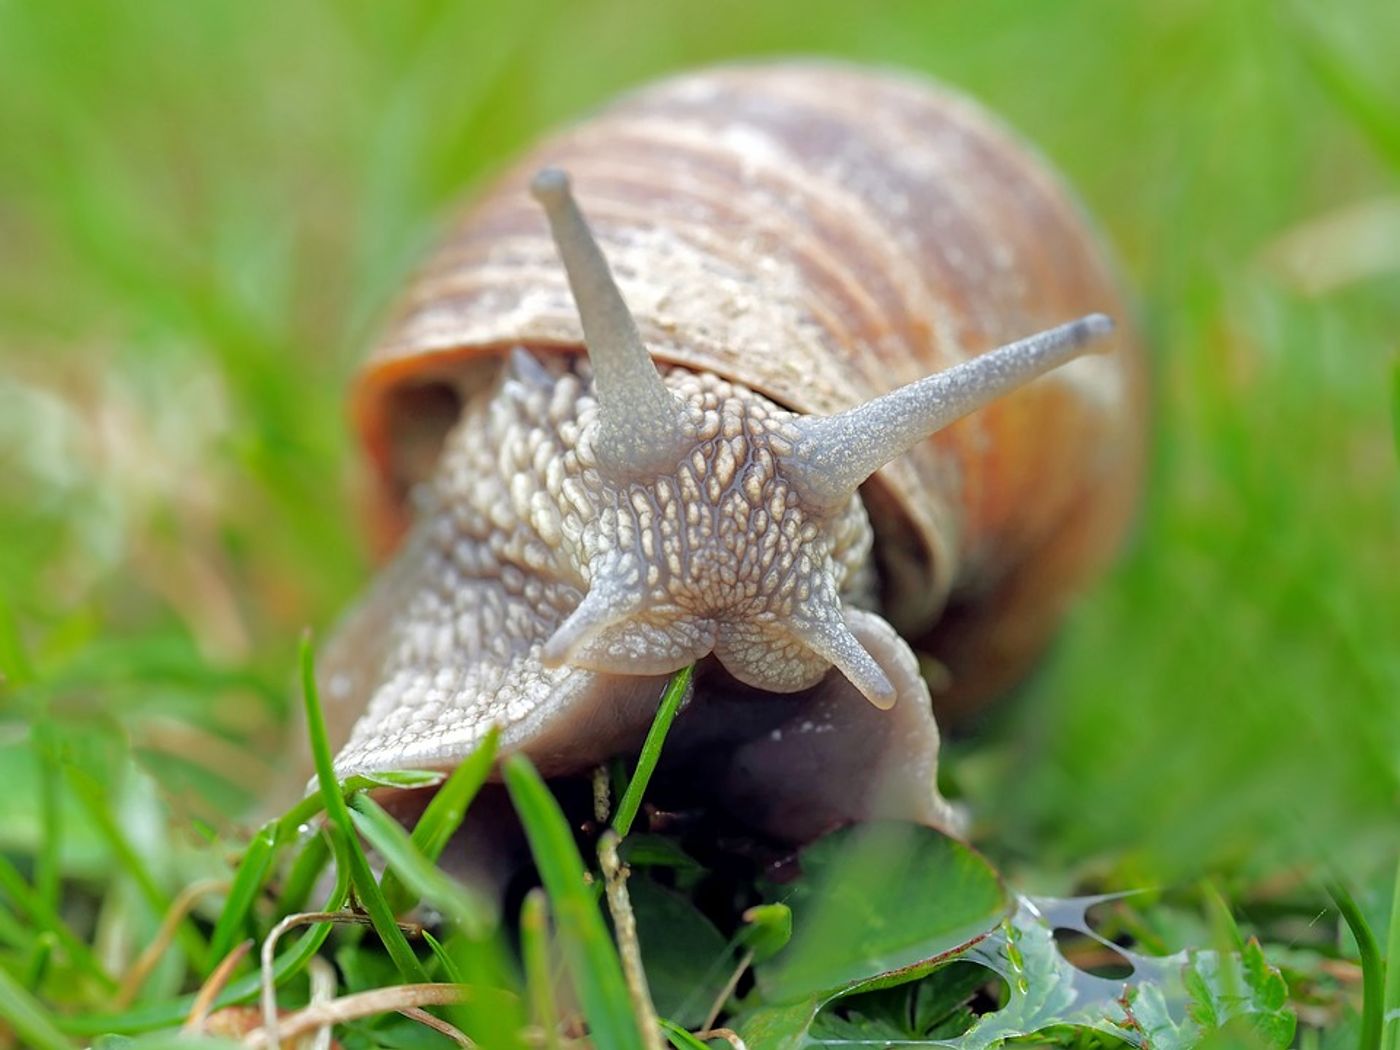 An ordinary snail.